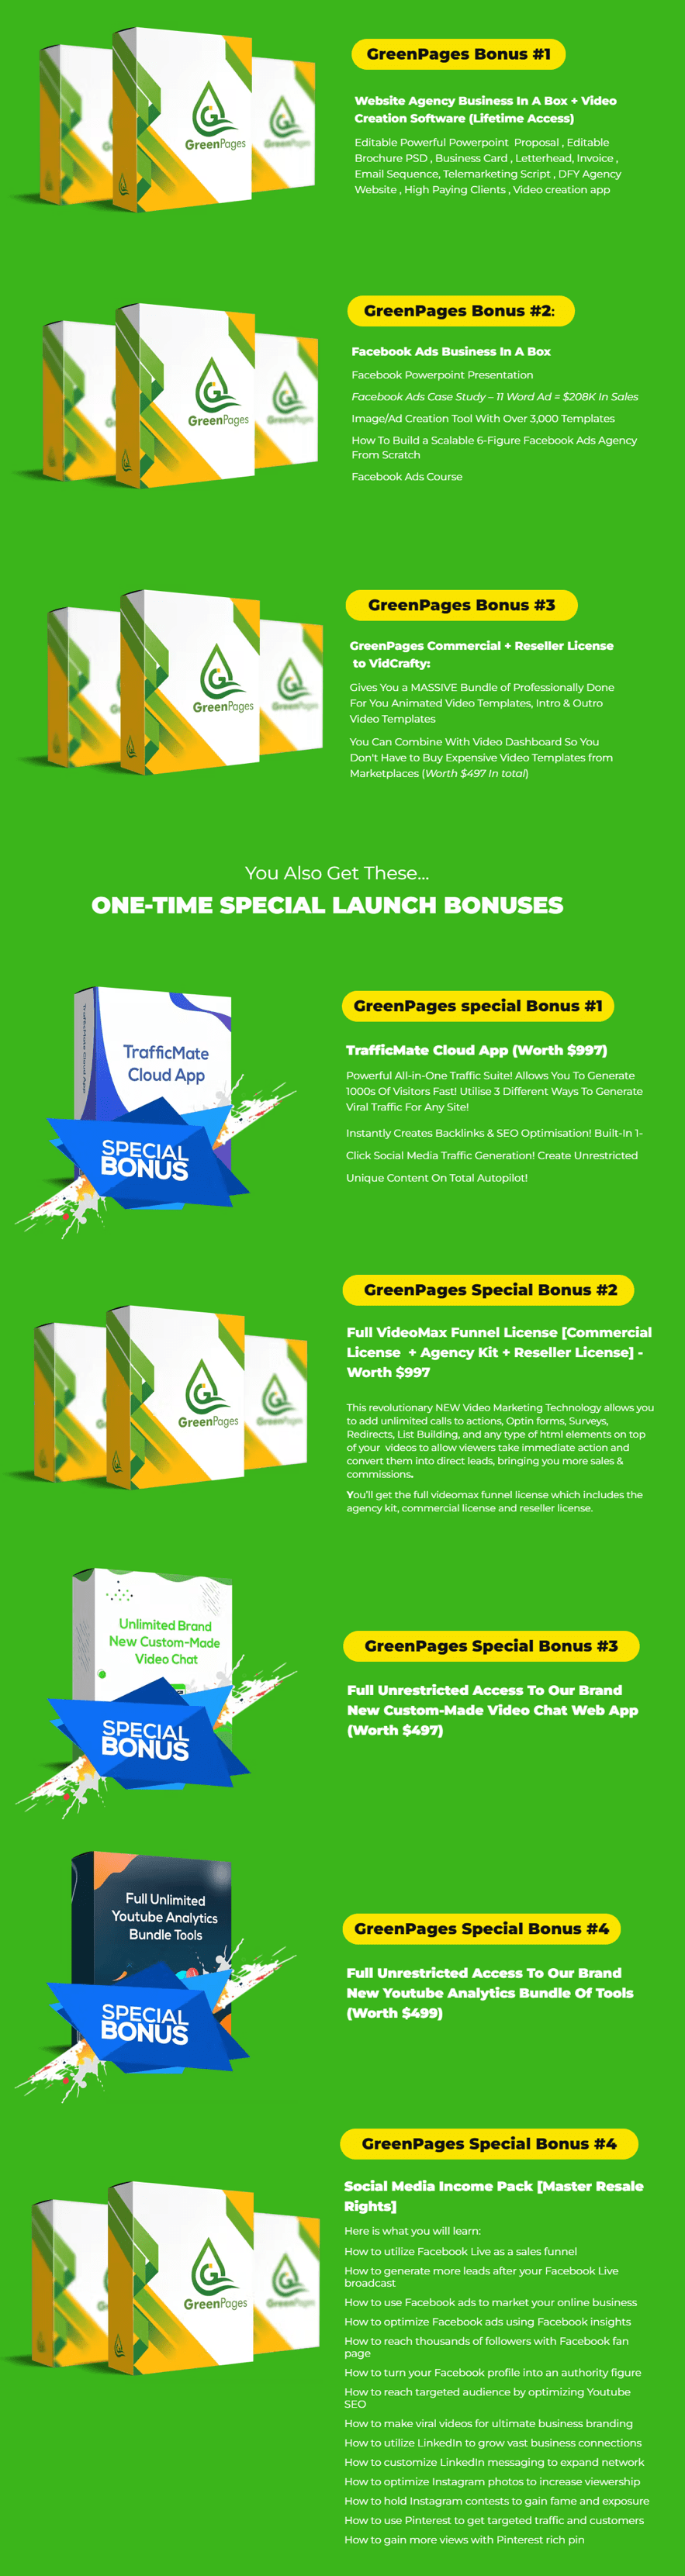 GreenPages-Bonus-1